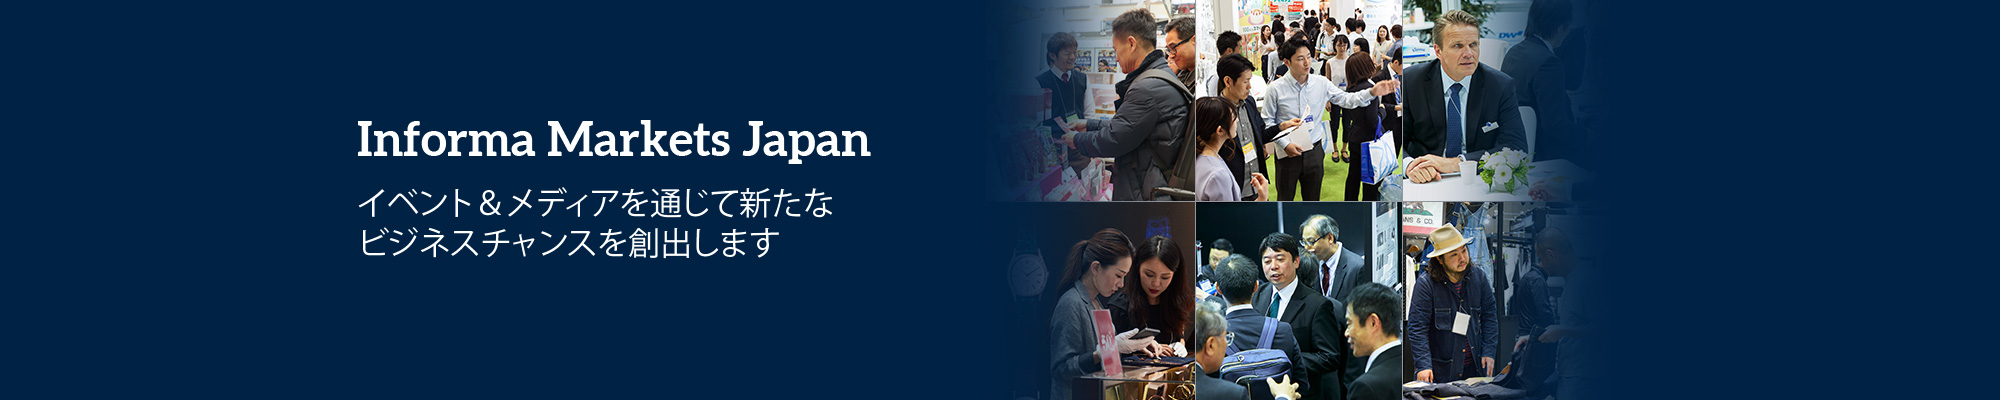 Informa Markets in Japan